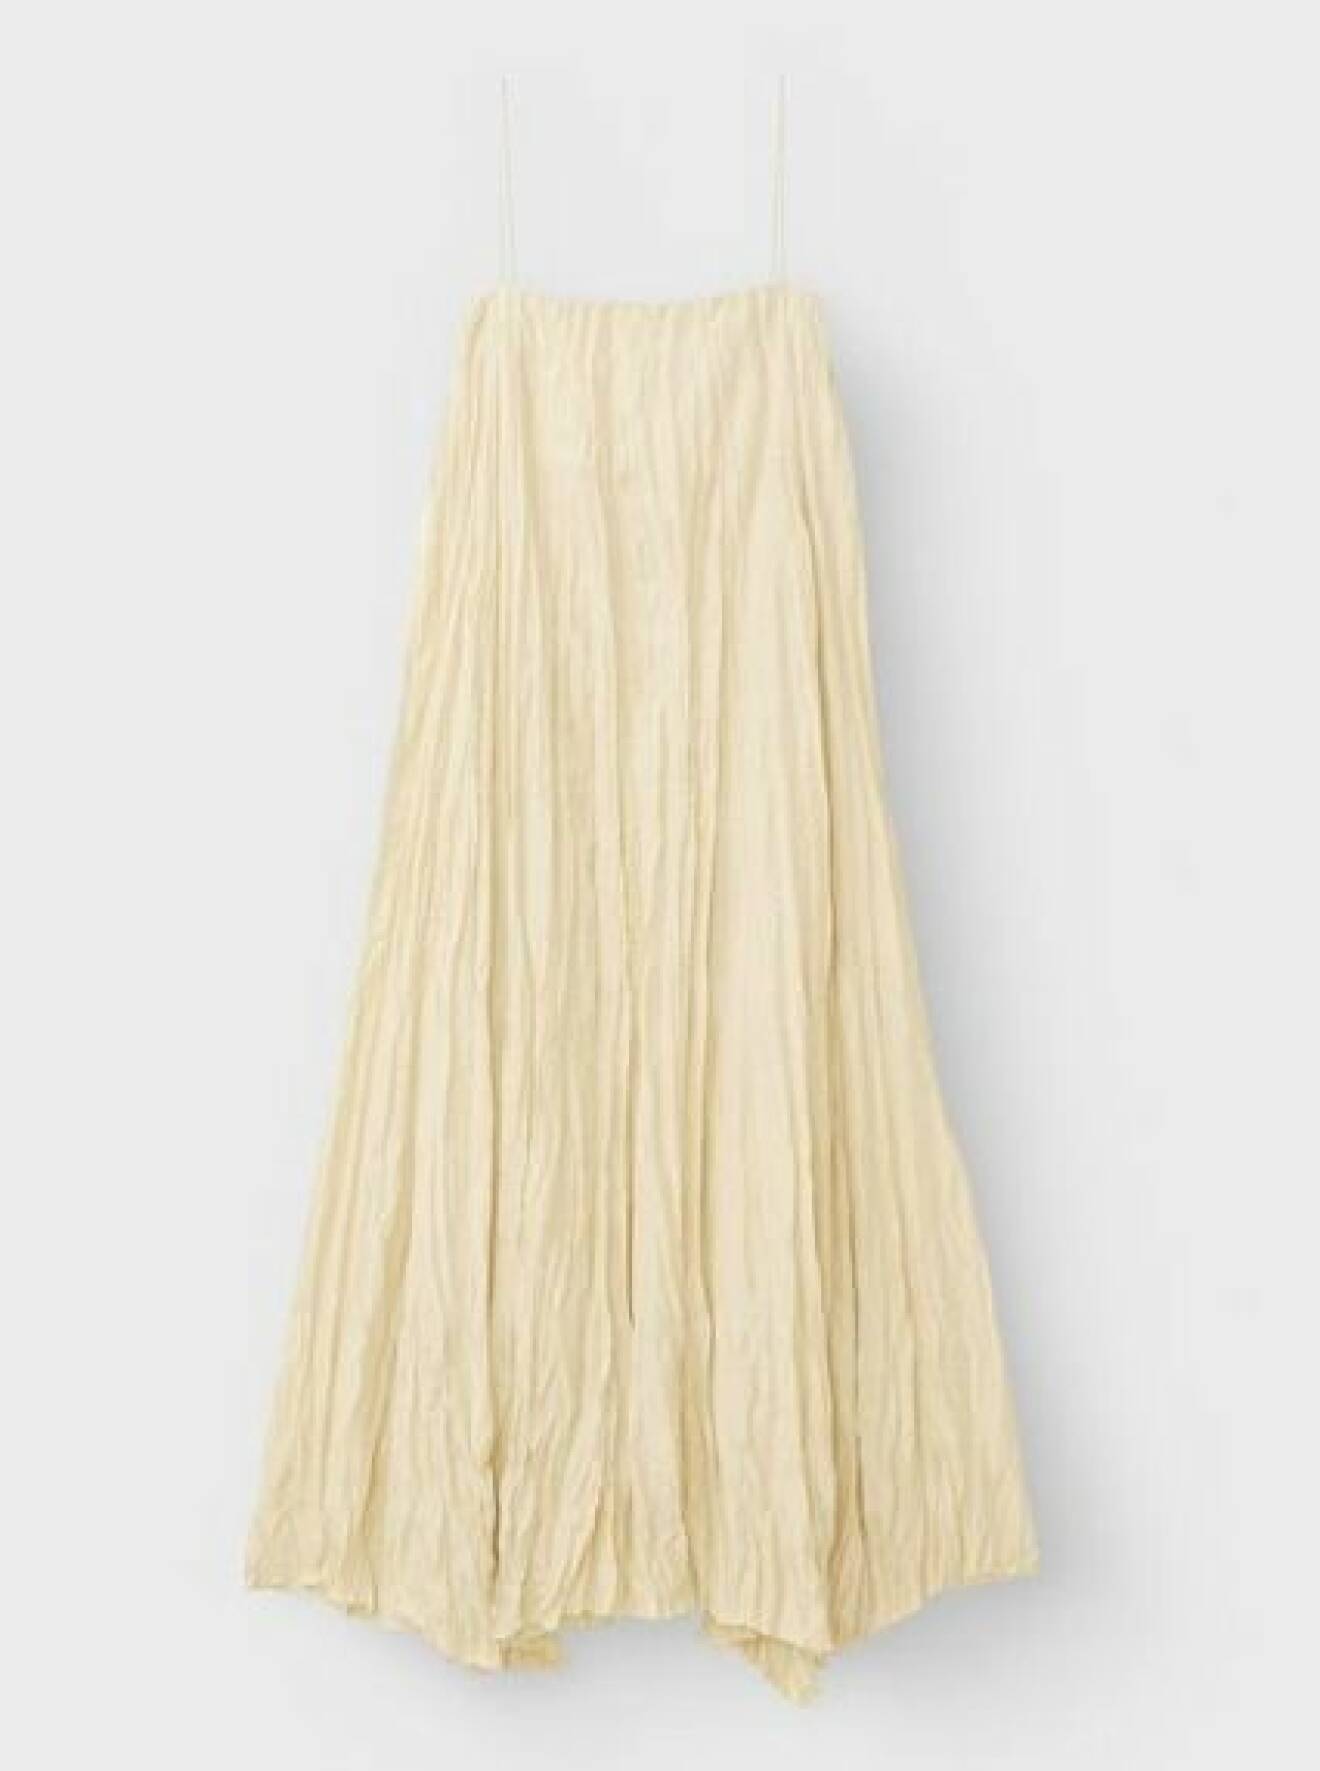 Champangefärgad klänning i crinklat, skrynkligt material. Klänningen går ner till anklarna och är i vid modell med tunna spagettisband upptill och rak skärning vid bystet. Klänning från Toteme.